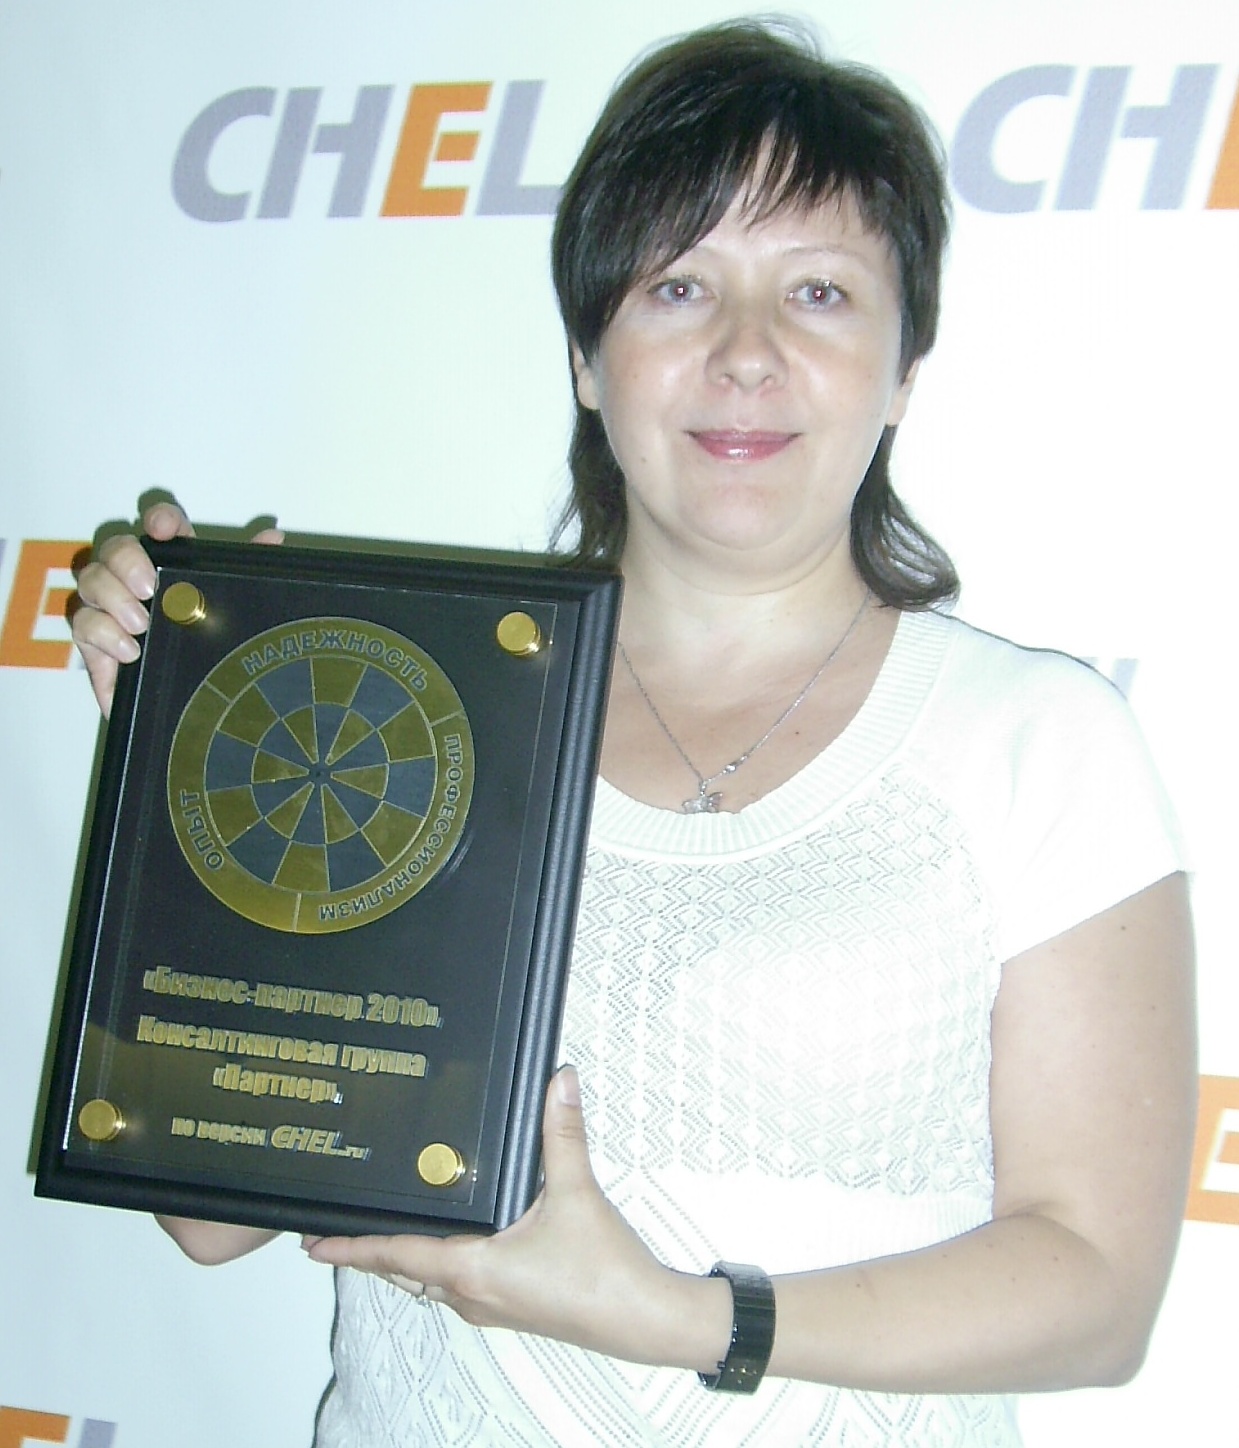 Приз за победу в конкурсе "Бизнес-партнер 2010", проводимом сайтом Chel.ru